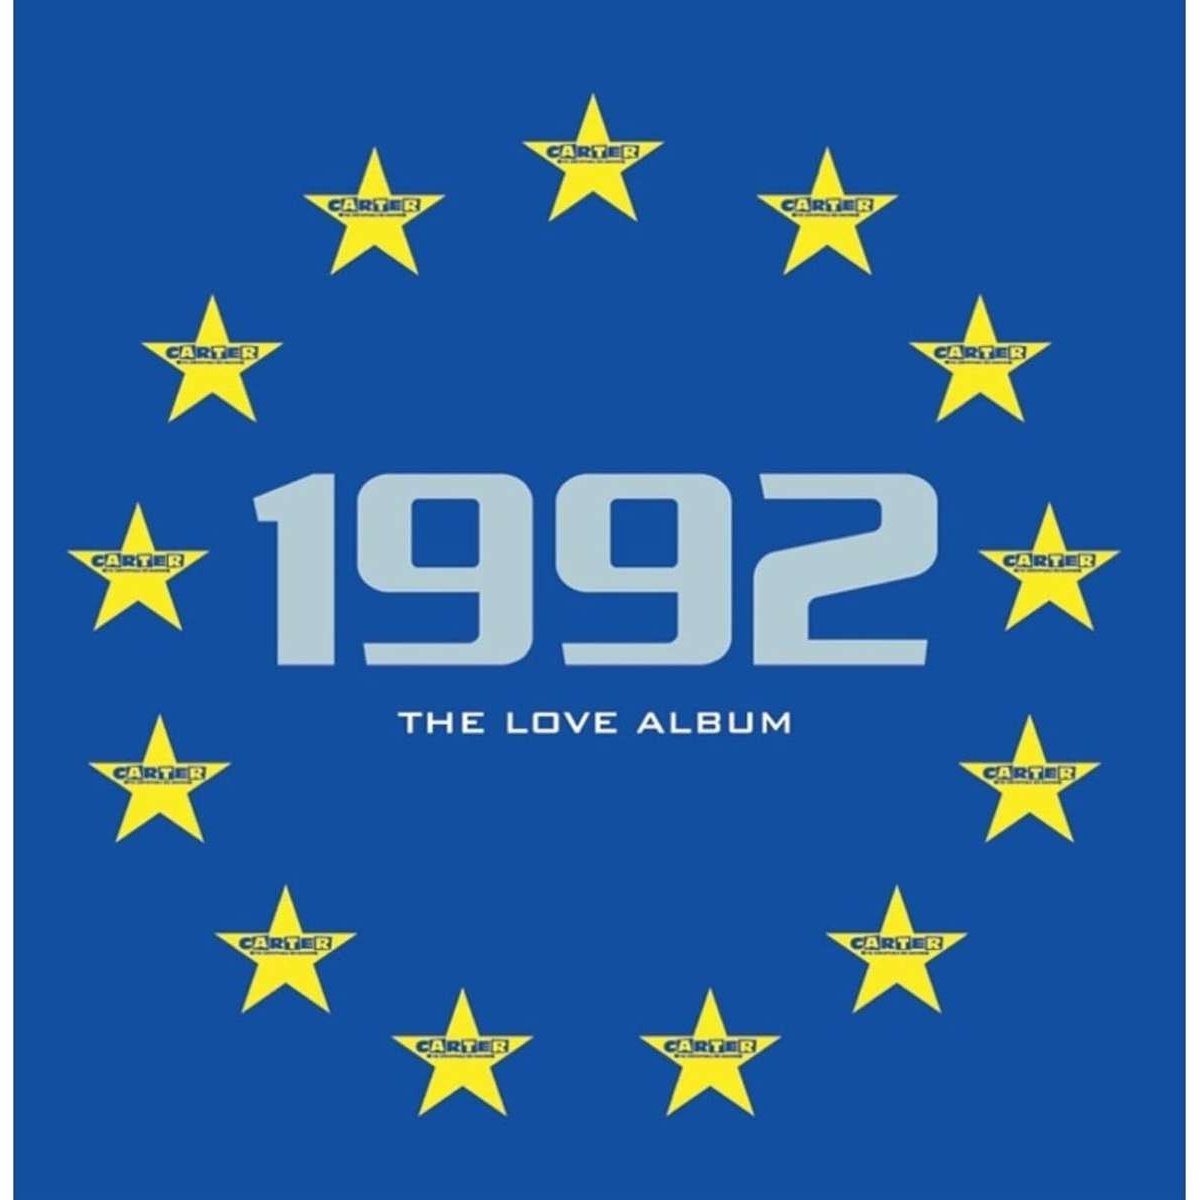 1992: THE LOVE ALBUM